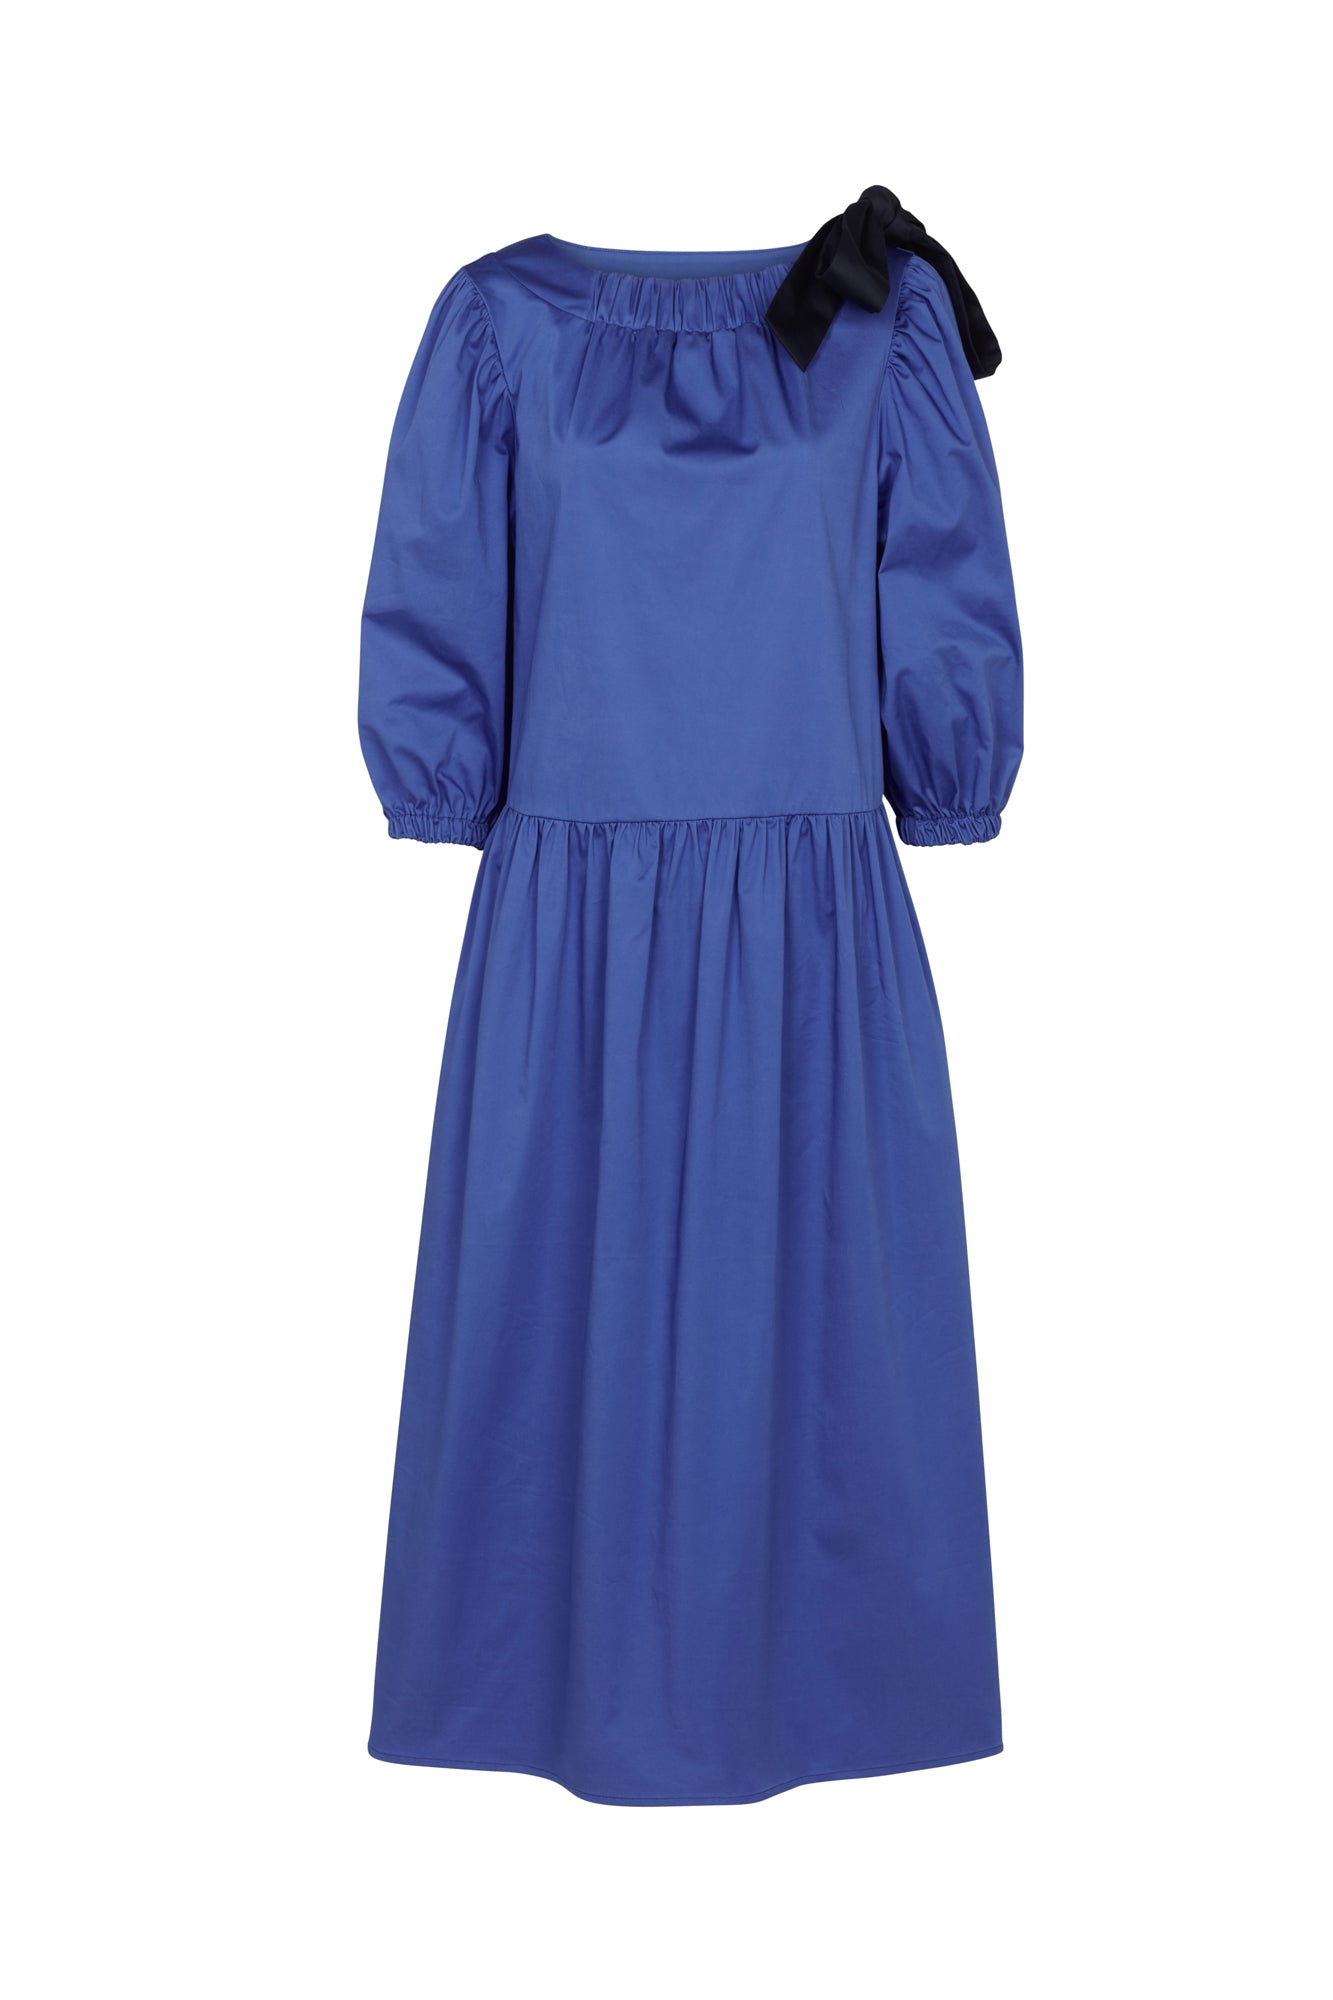 Women’s Hanna Dress Cobalt Blue Small Mirla Beane